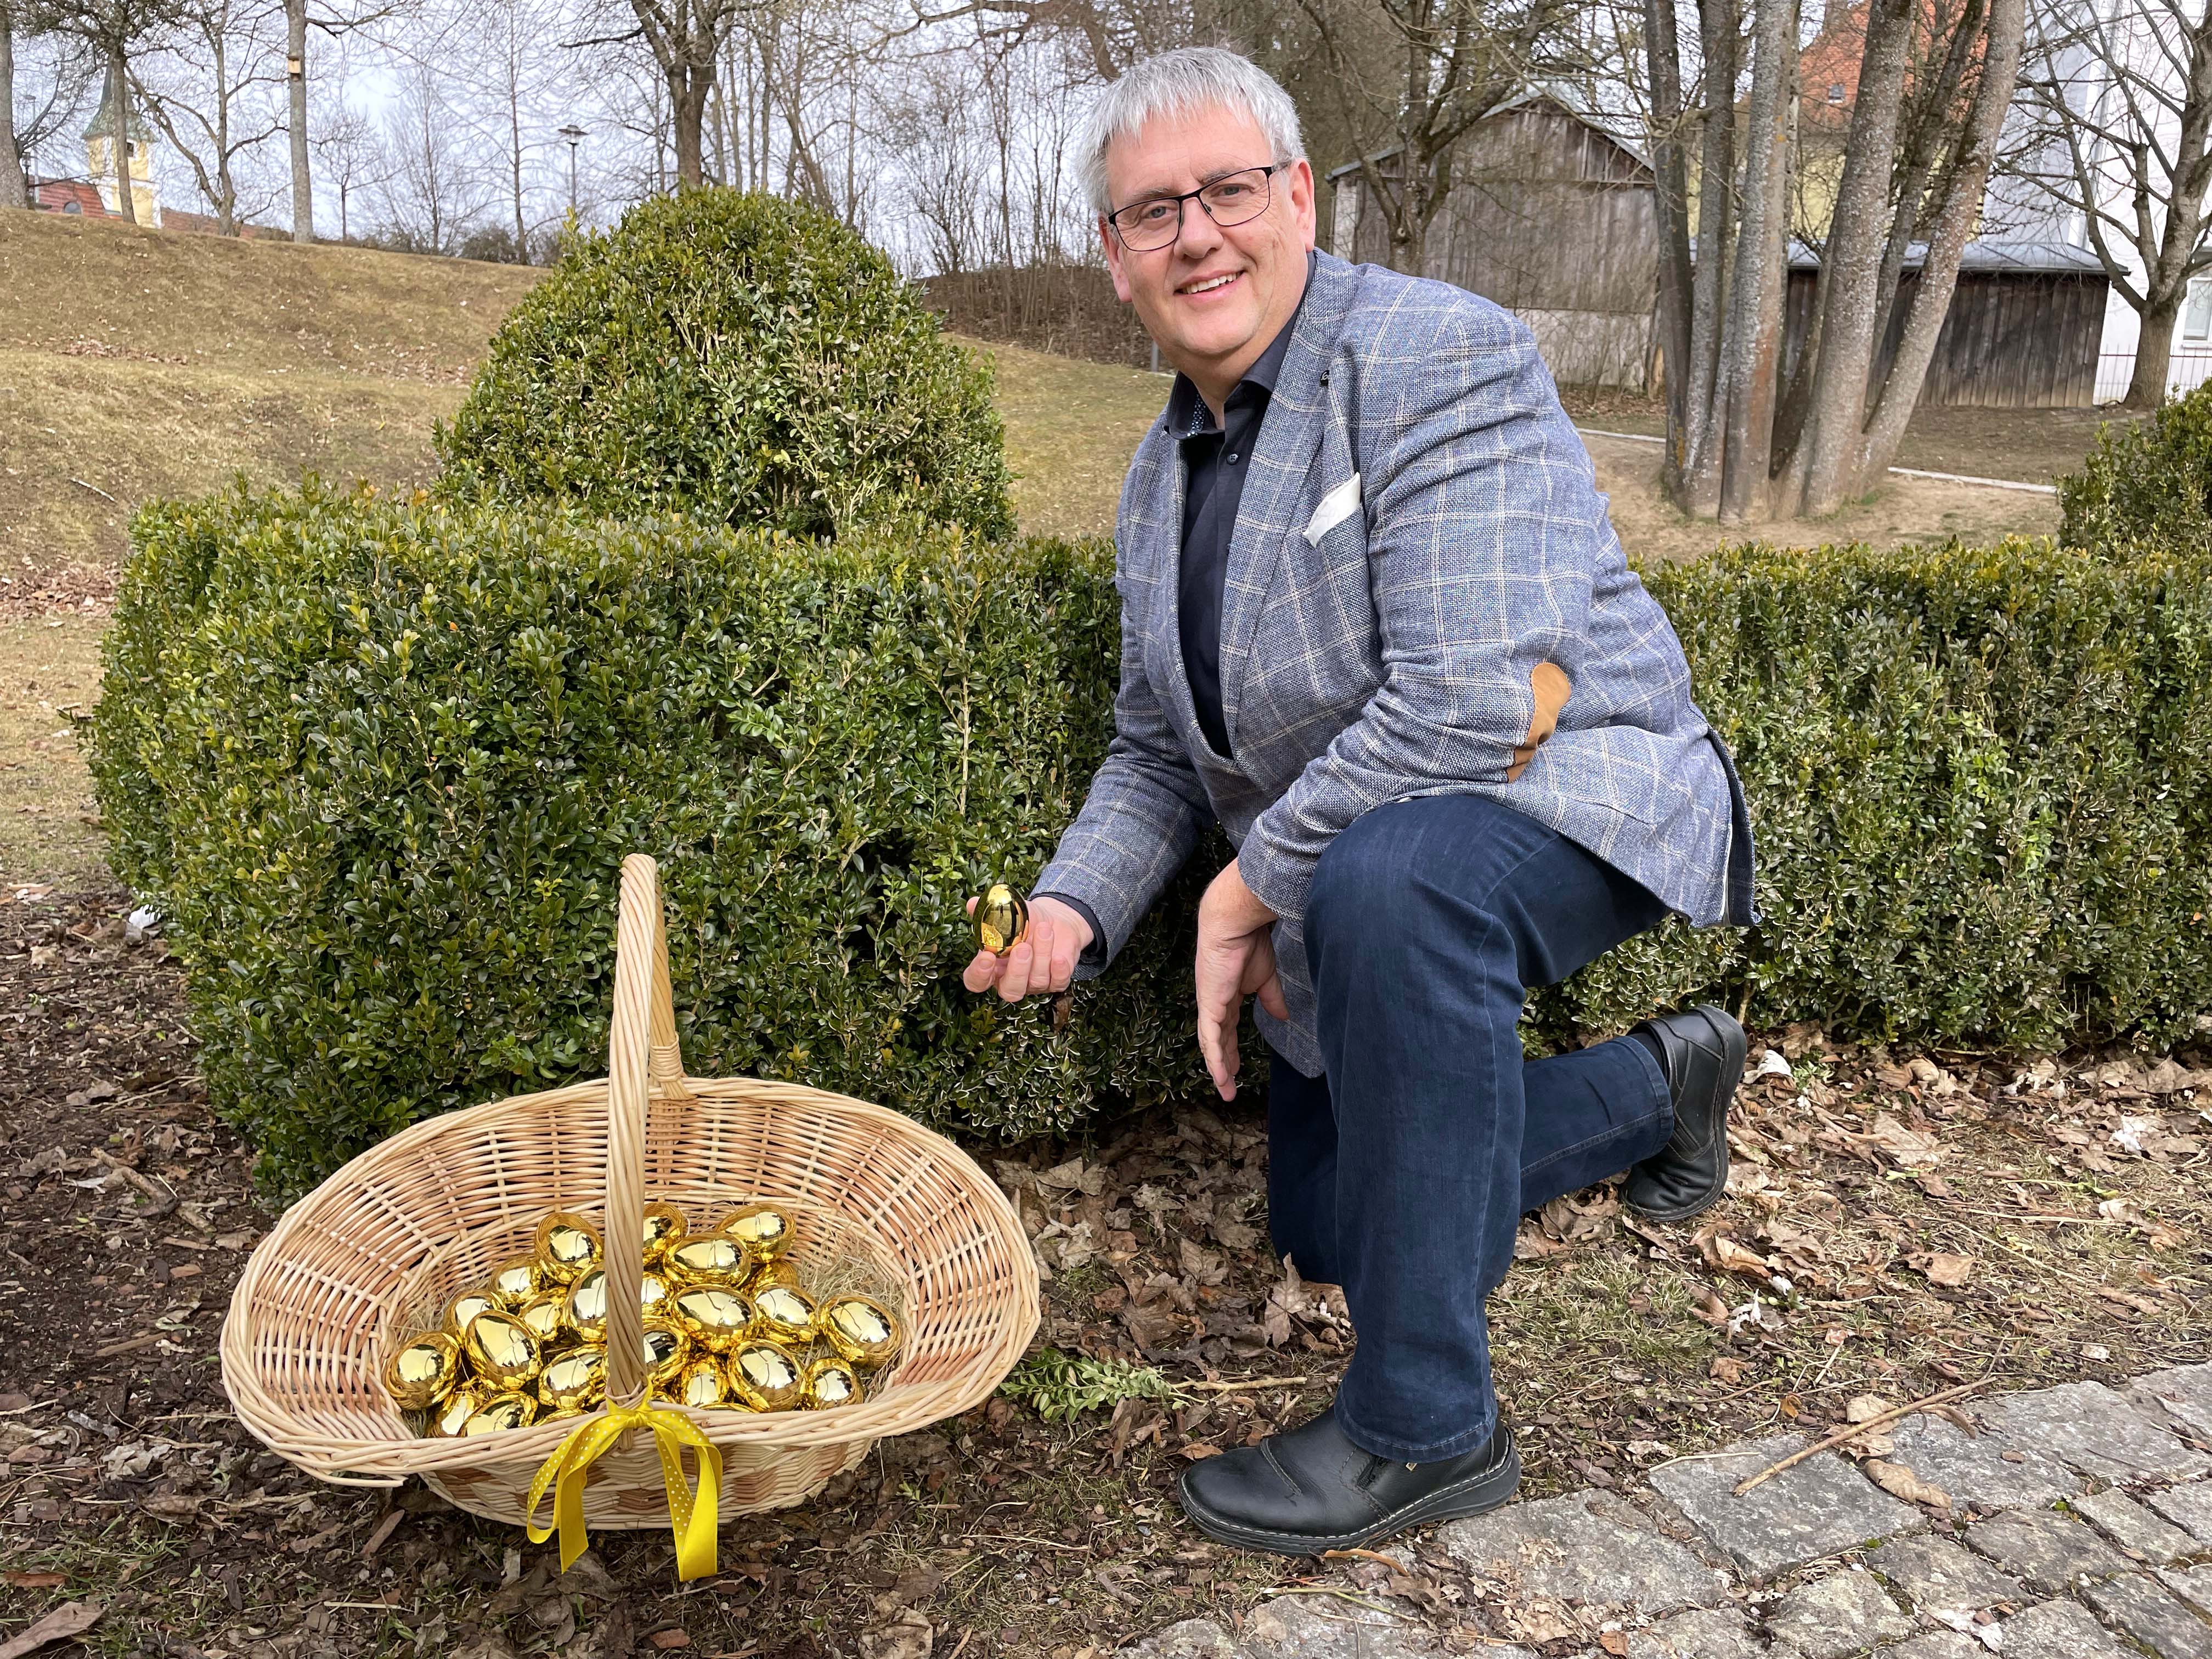 Bürgermeister Herbert Tischhöfer freut sich auf die erste Tangrintler Ostereiersuche. Ob wohl auch im Rathausgarten eines der 33 goldenen Ostereier versteckt sein wird?